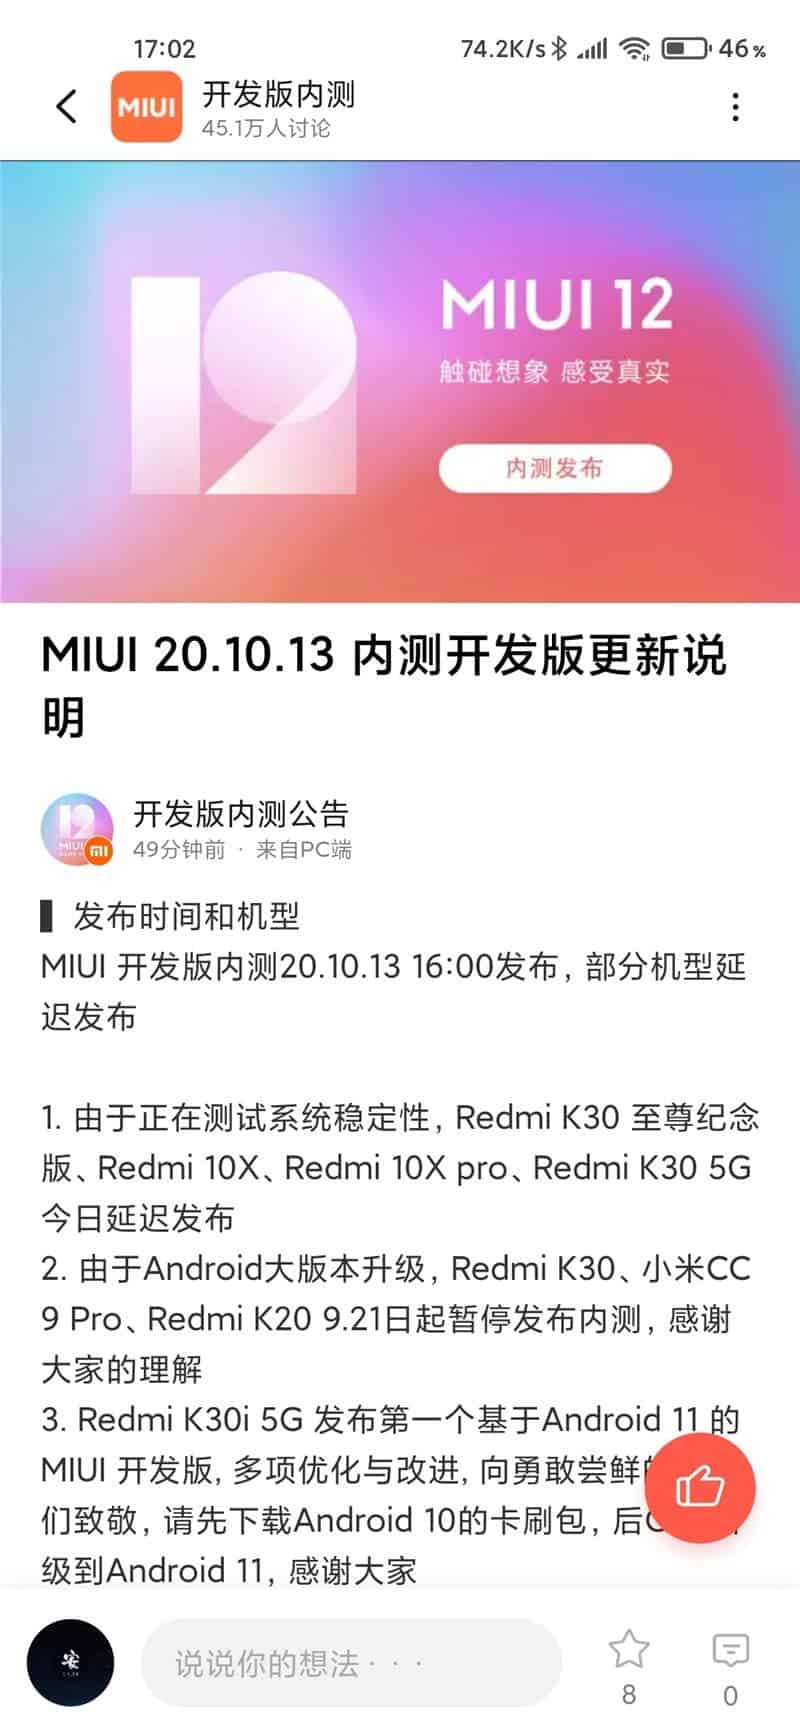 Смартфон Redmi K30i получит обновленную оболочку MIUI 12